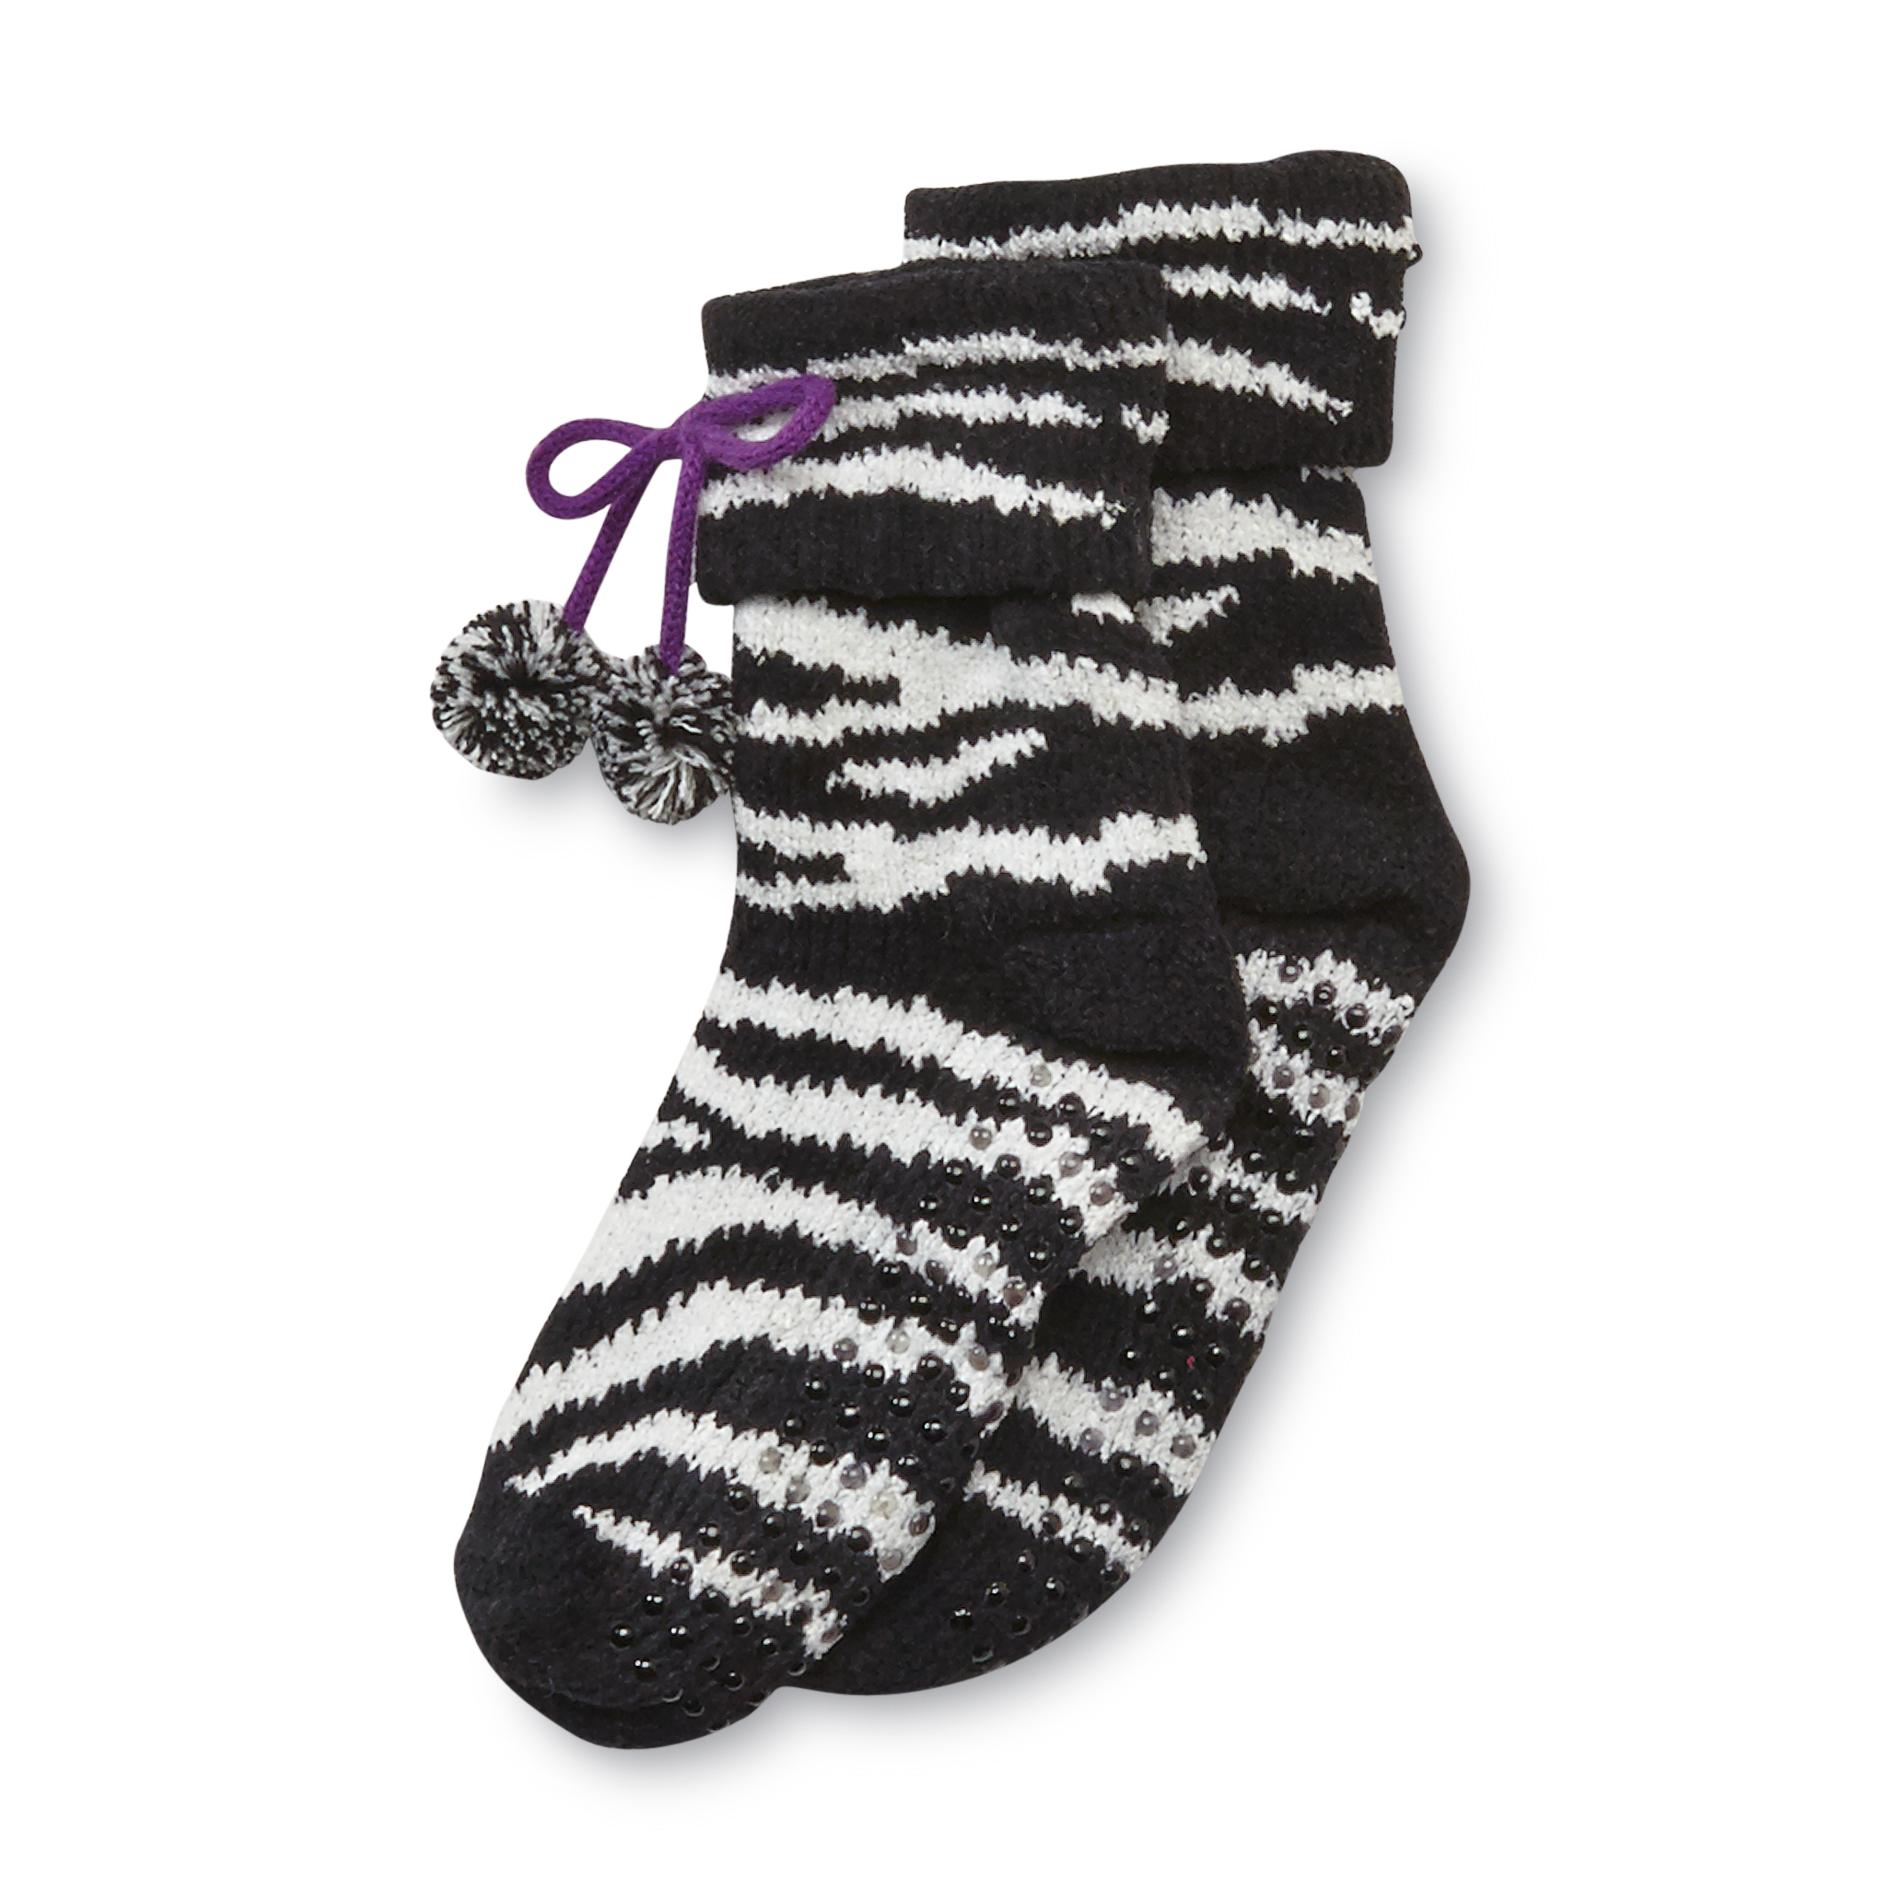 Joe Boxer Women's Chenille Slipper Socks - Zebra Striped